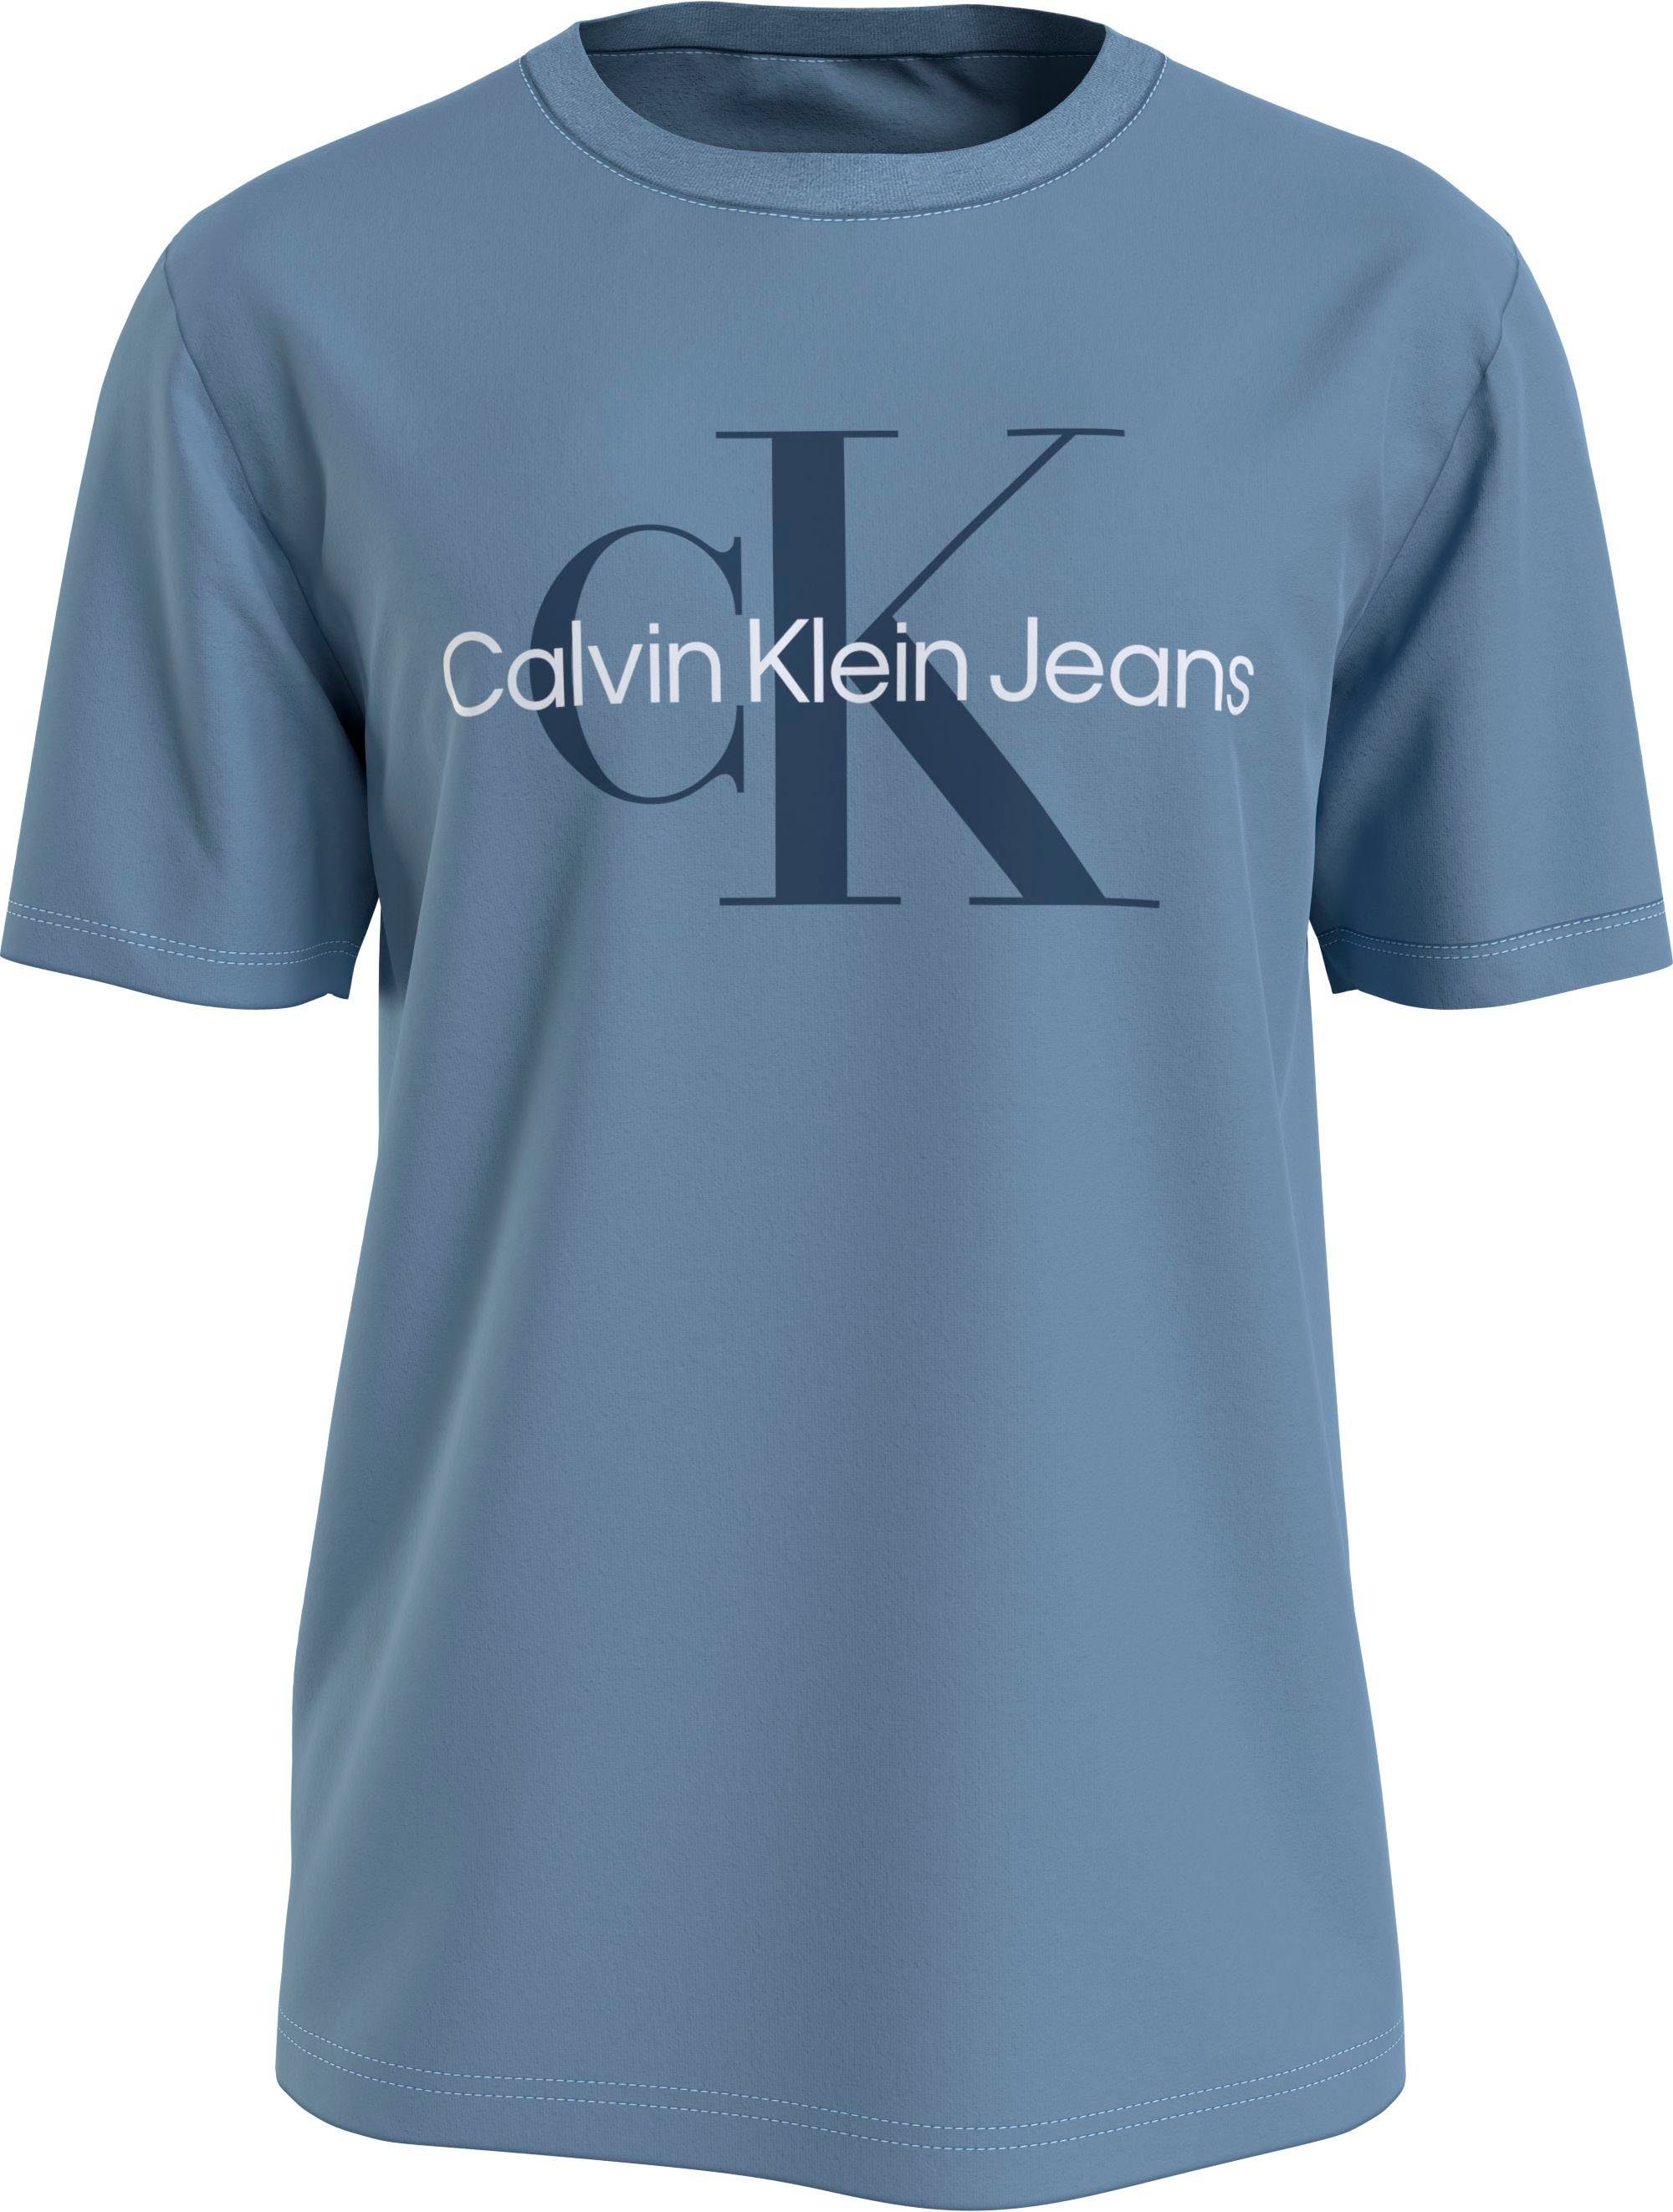 SEASONAL Logoschriftzug Calvin Iceland Klein mit MONOLOGO TEE Blue Brust Calvin Klein auf Jeans T-Shirt der